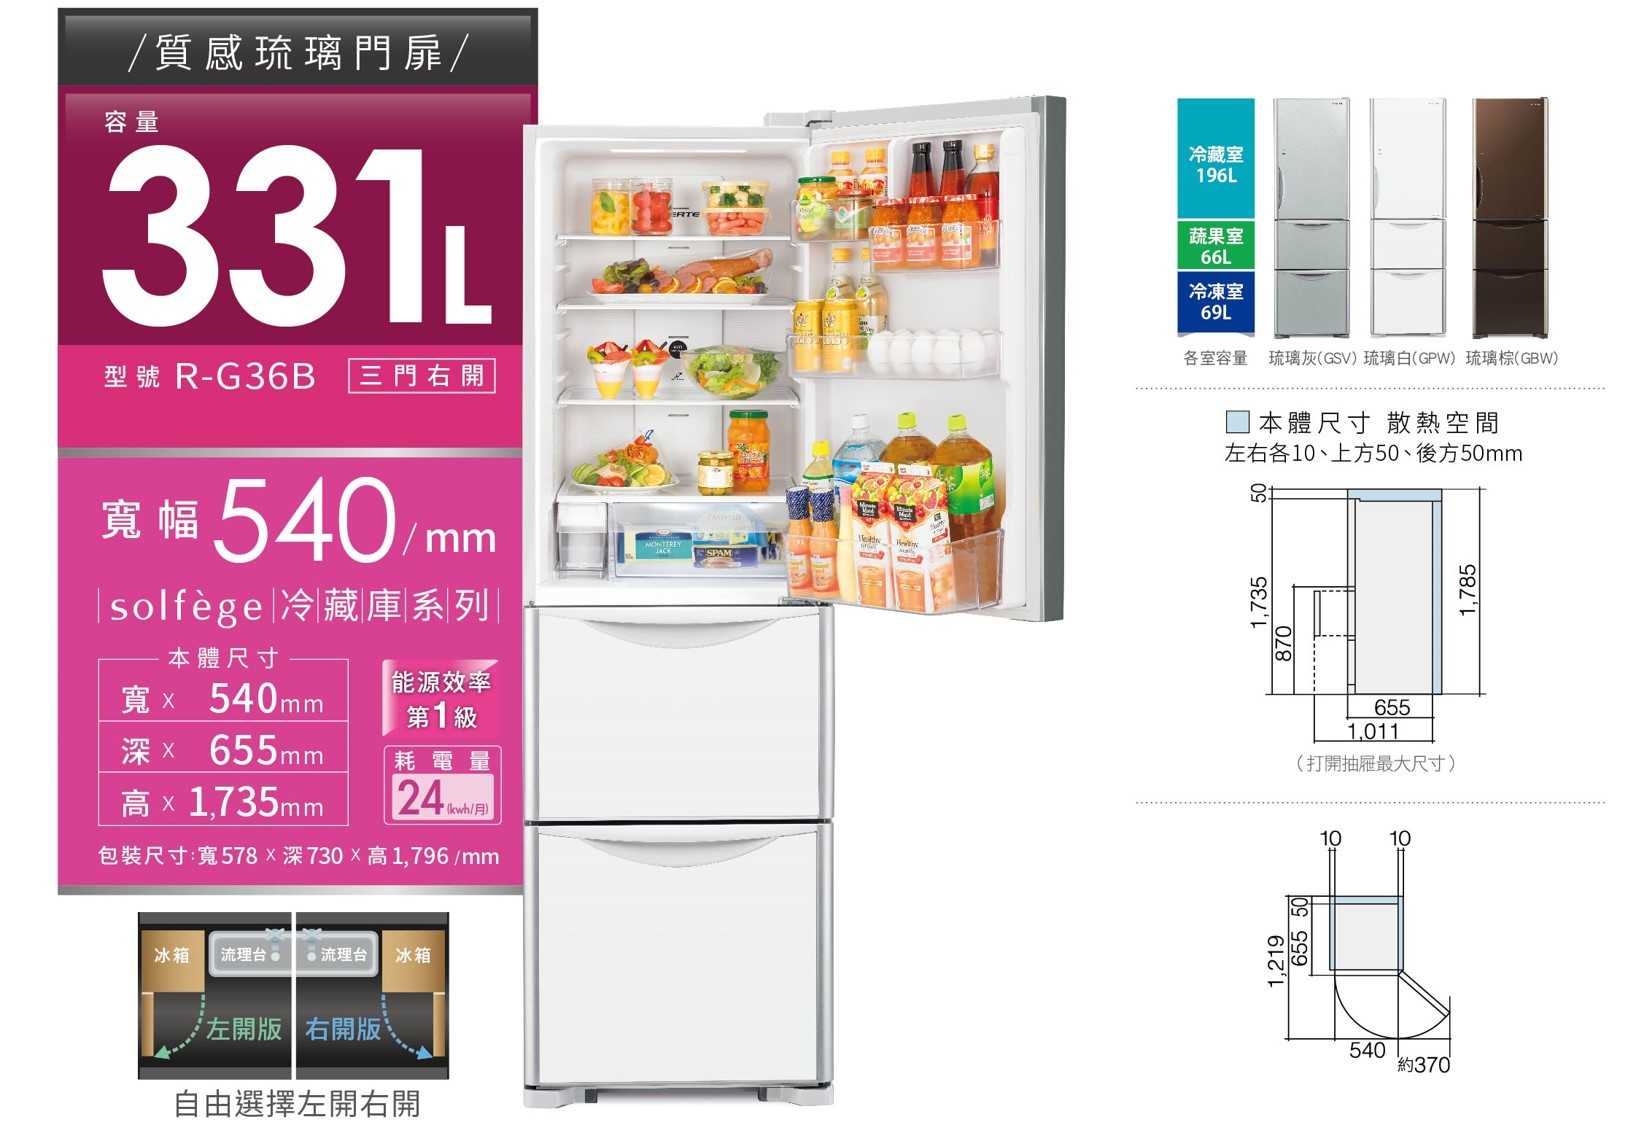 有現貨【獨家折扣碼】HITACHI 日立 RG36B 三門冰箱 R-G36B 331L 電冰箱 1級能源效率